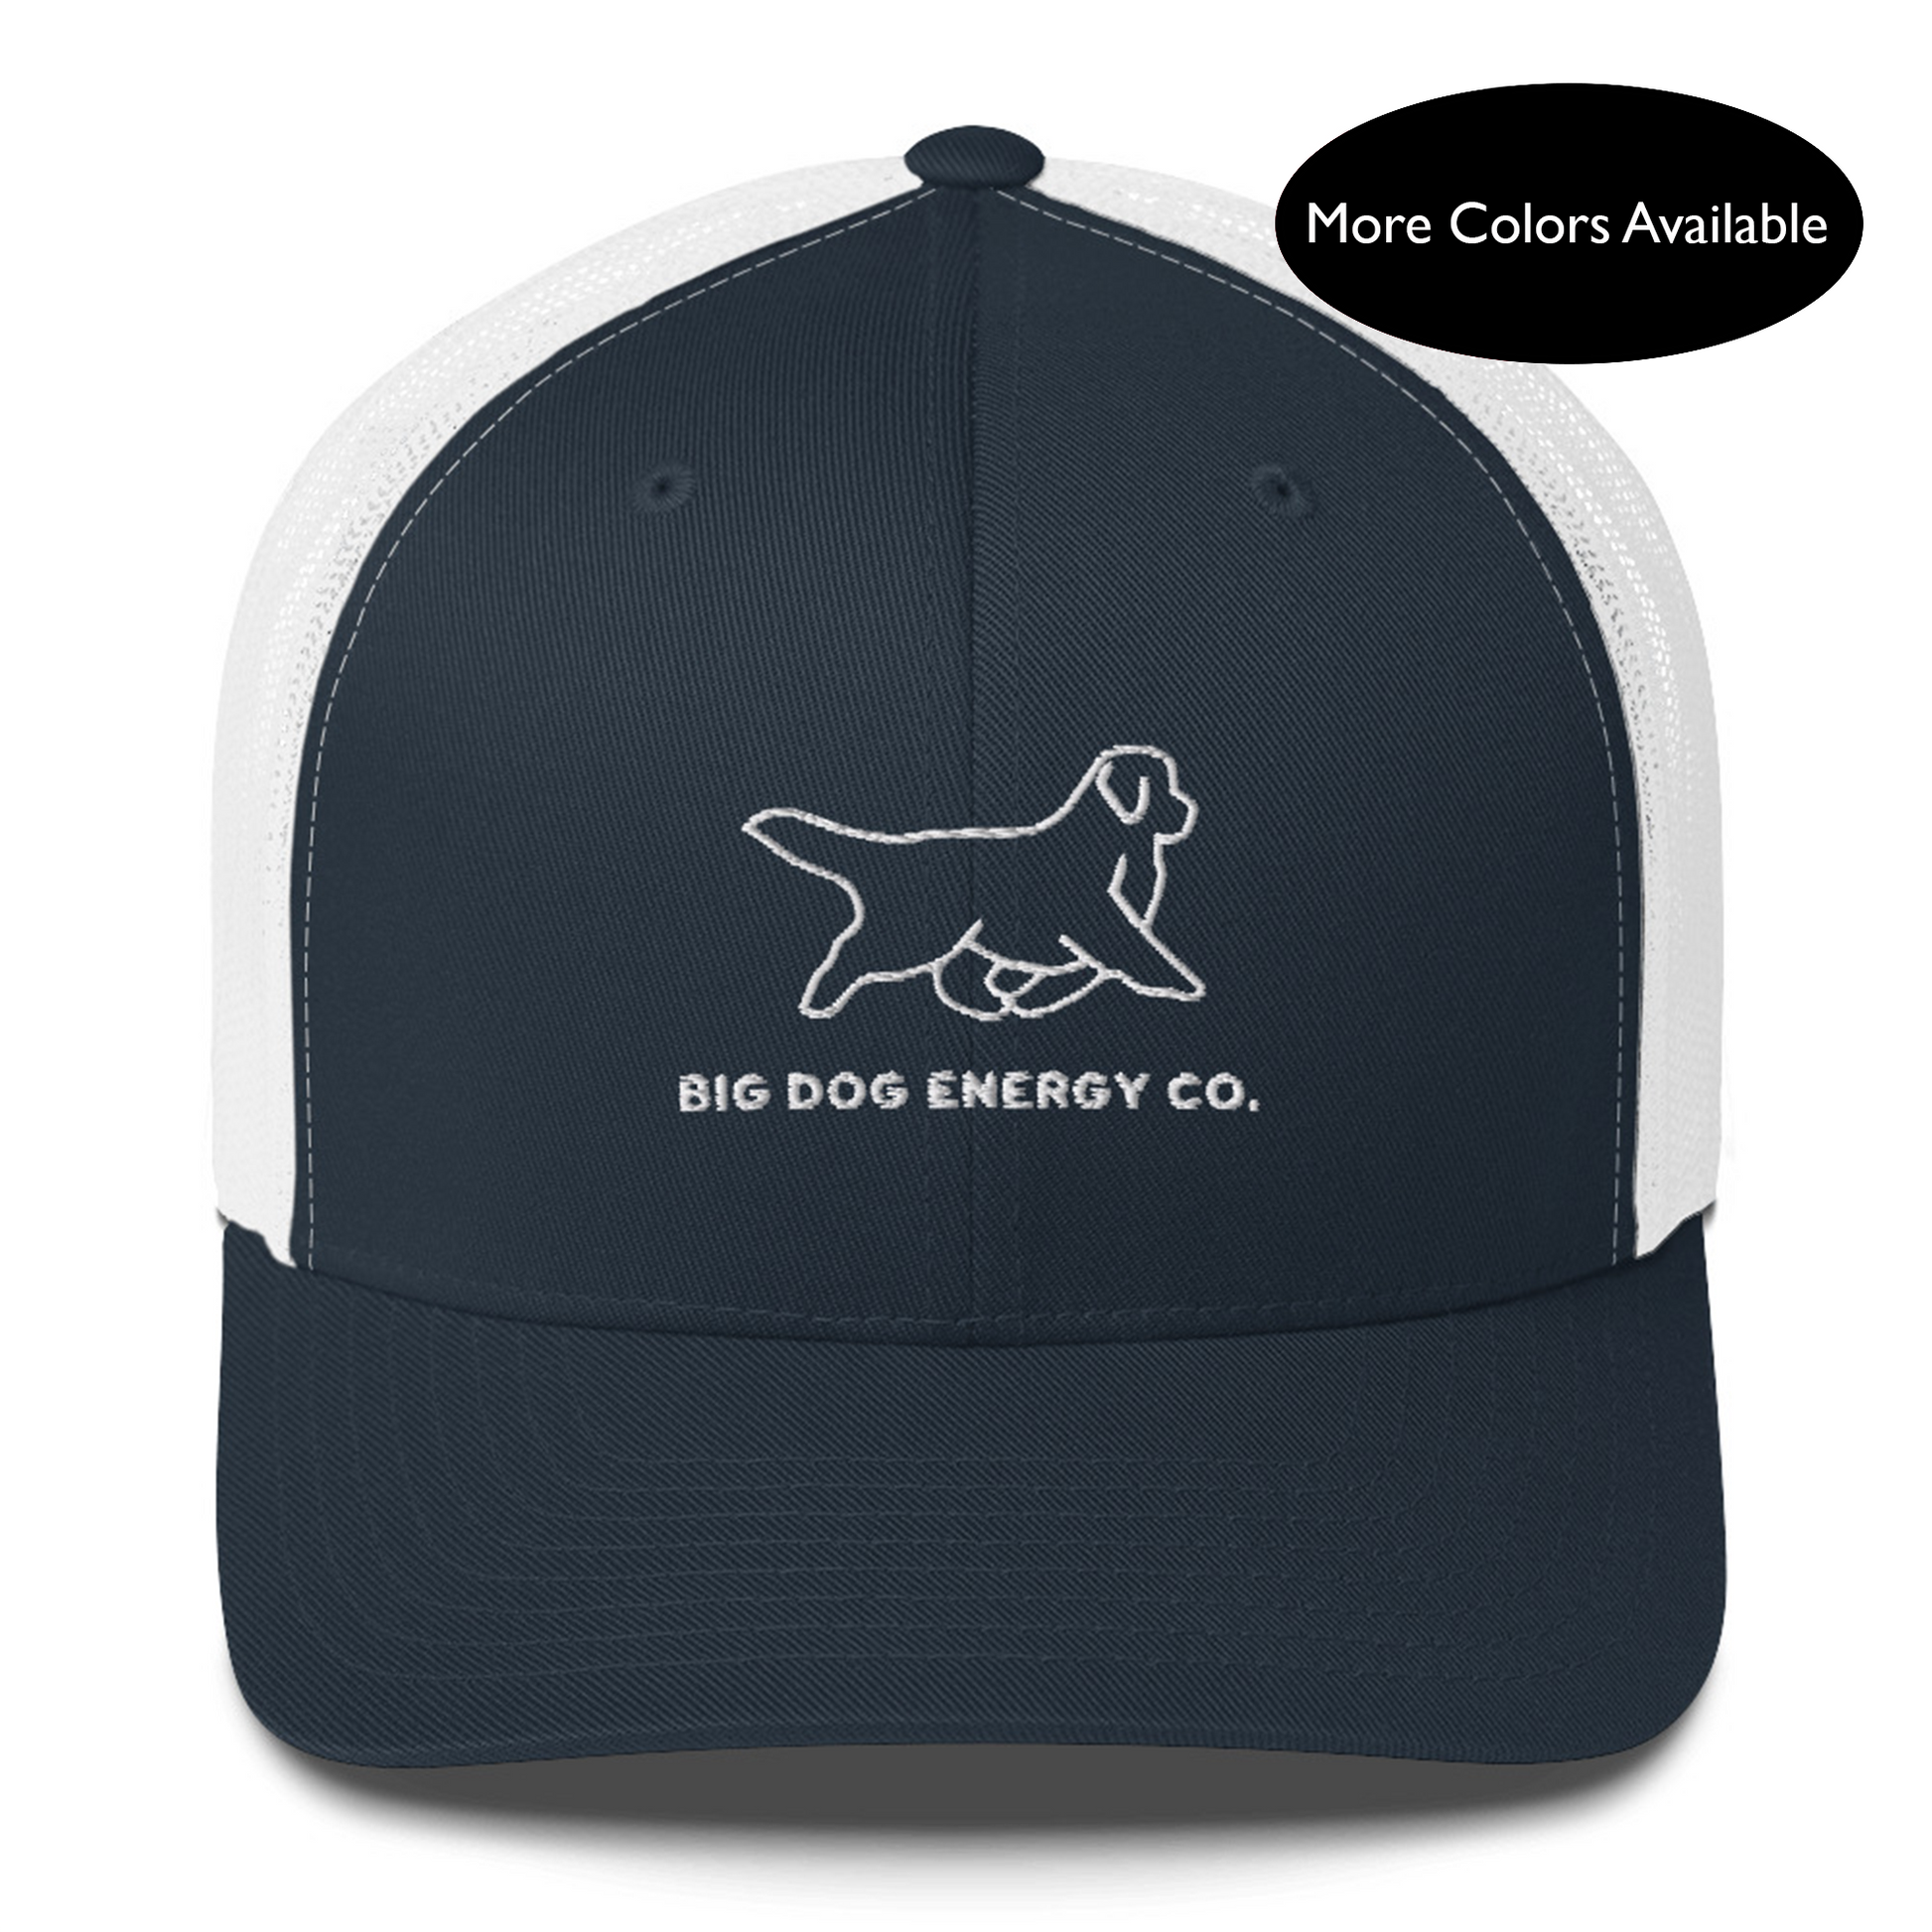 Big Dog Energy Co. Trucker Hat – Big Dog Energy Company